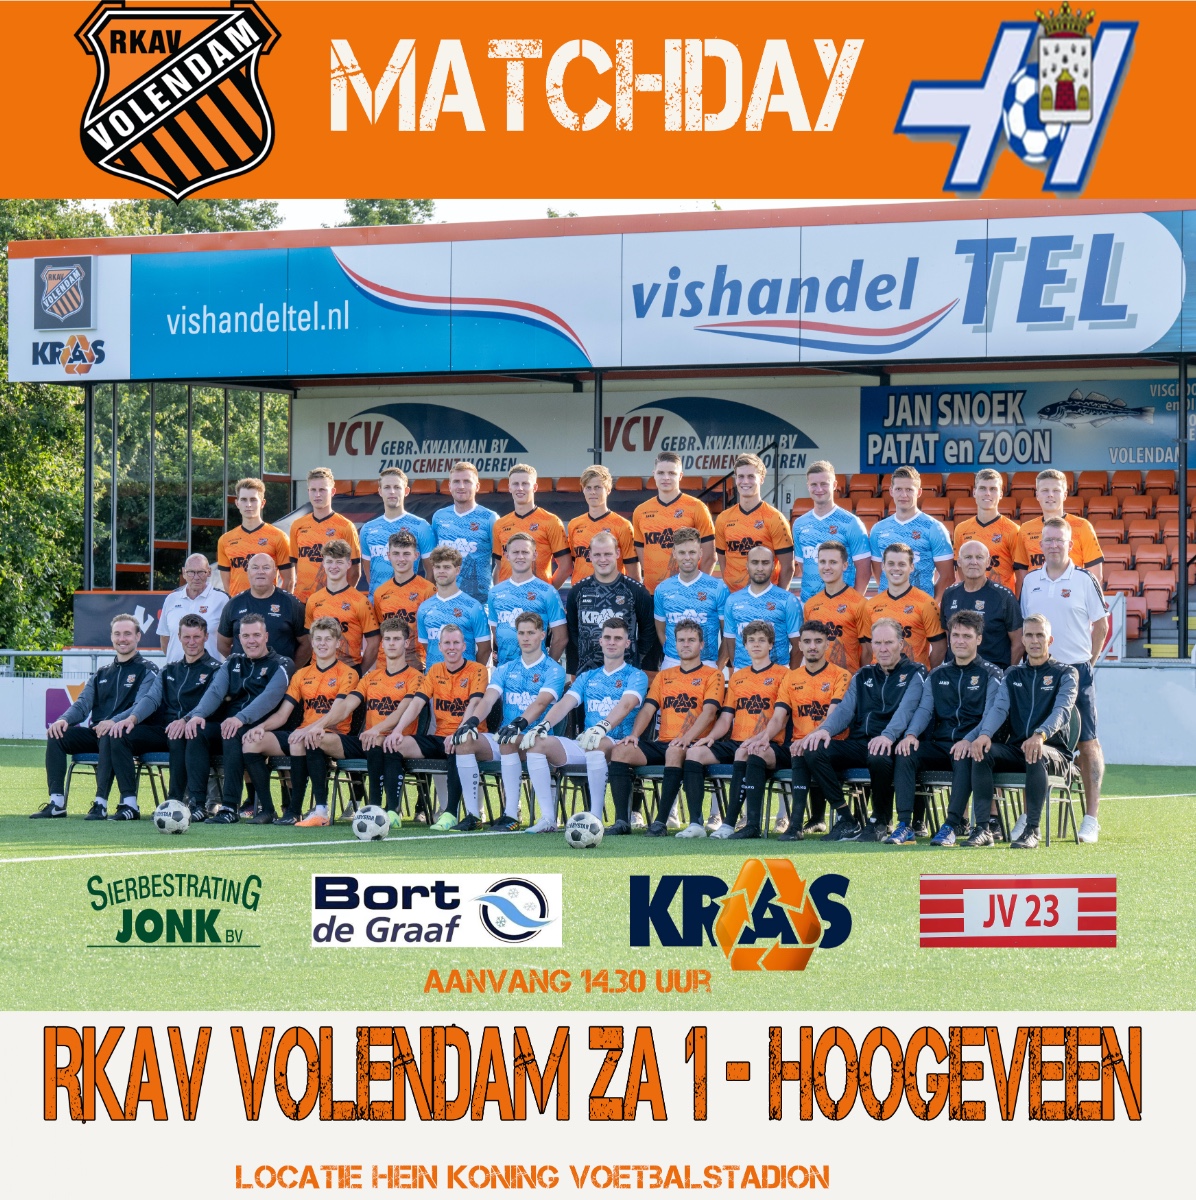 Rkav Volendam - Hoogeveen